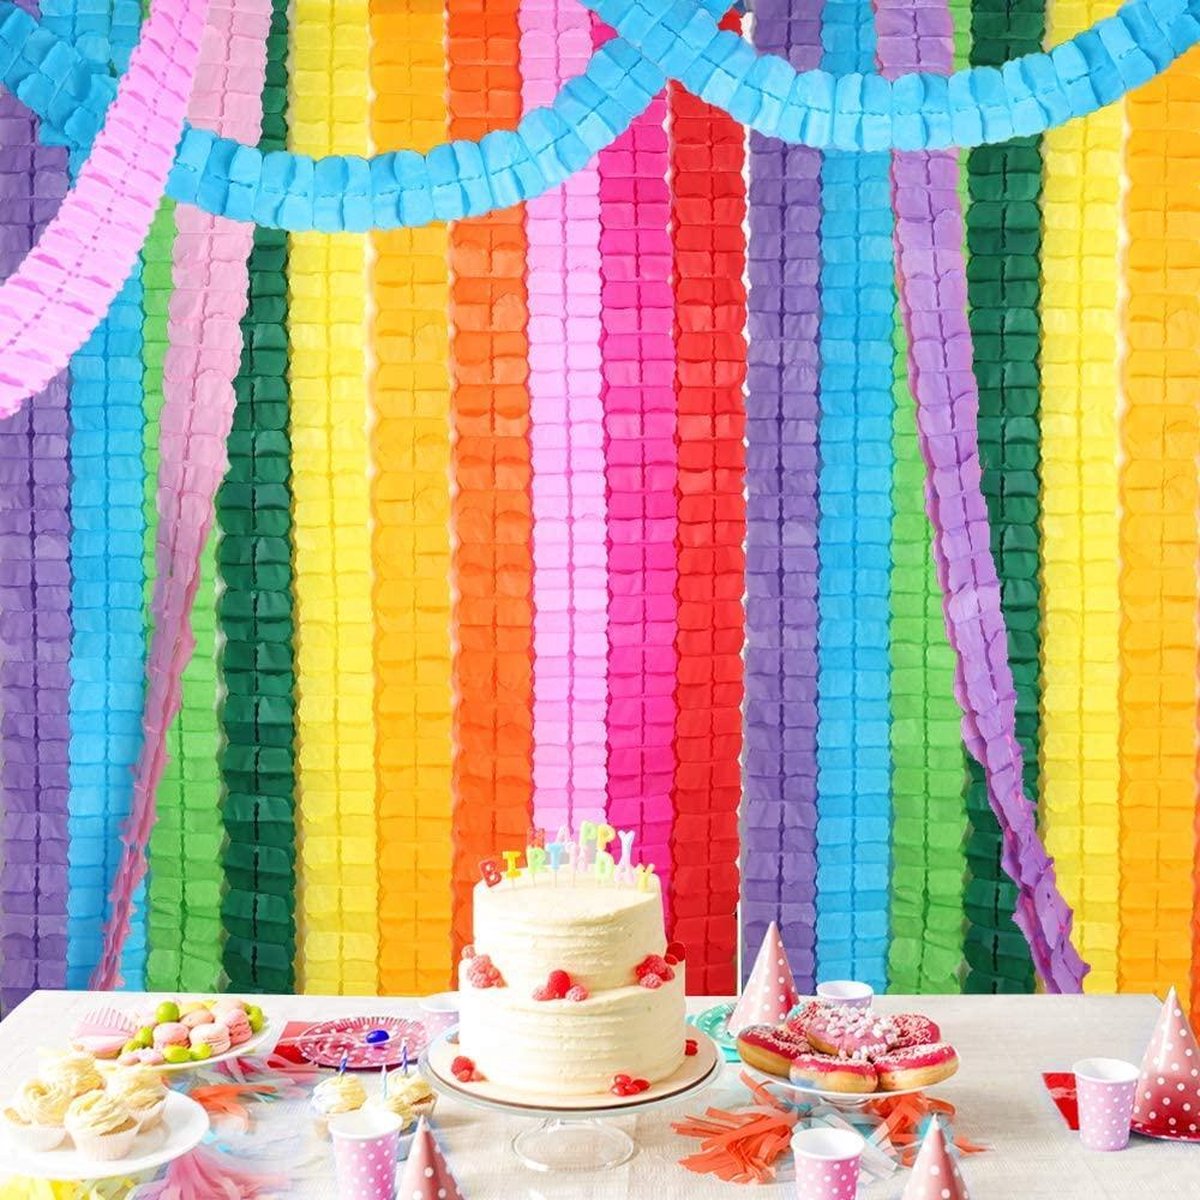 Fissaly 16 Stuks Papieren Slingers Verjaardag Versiering Gekleurd – Decoratie Happy Birthday Feest & Feestje - Roze, Blauw, Groen, Rood, Oranje, Geel, Paars - Fissaly